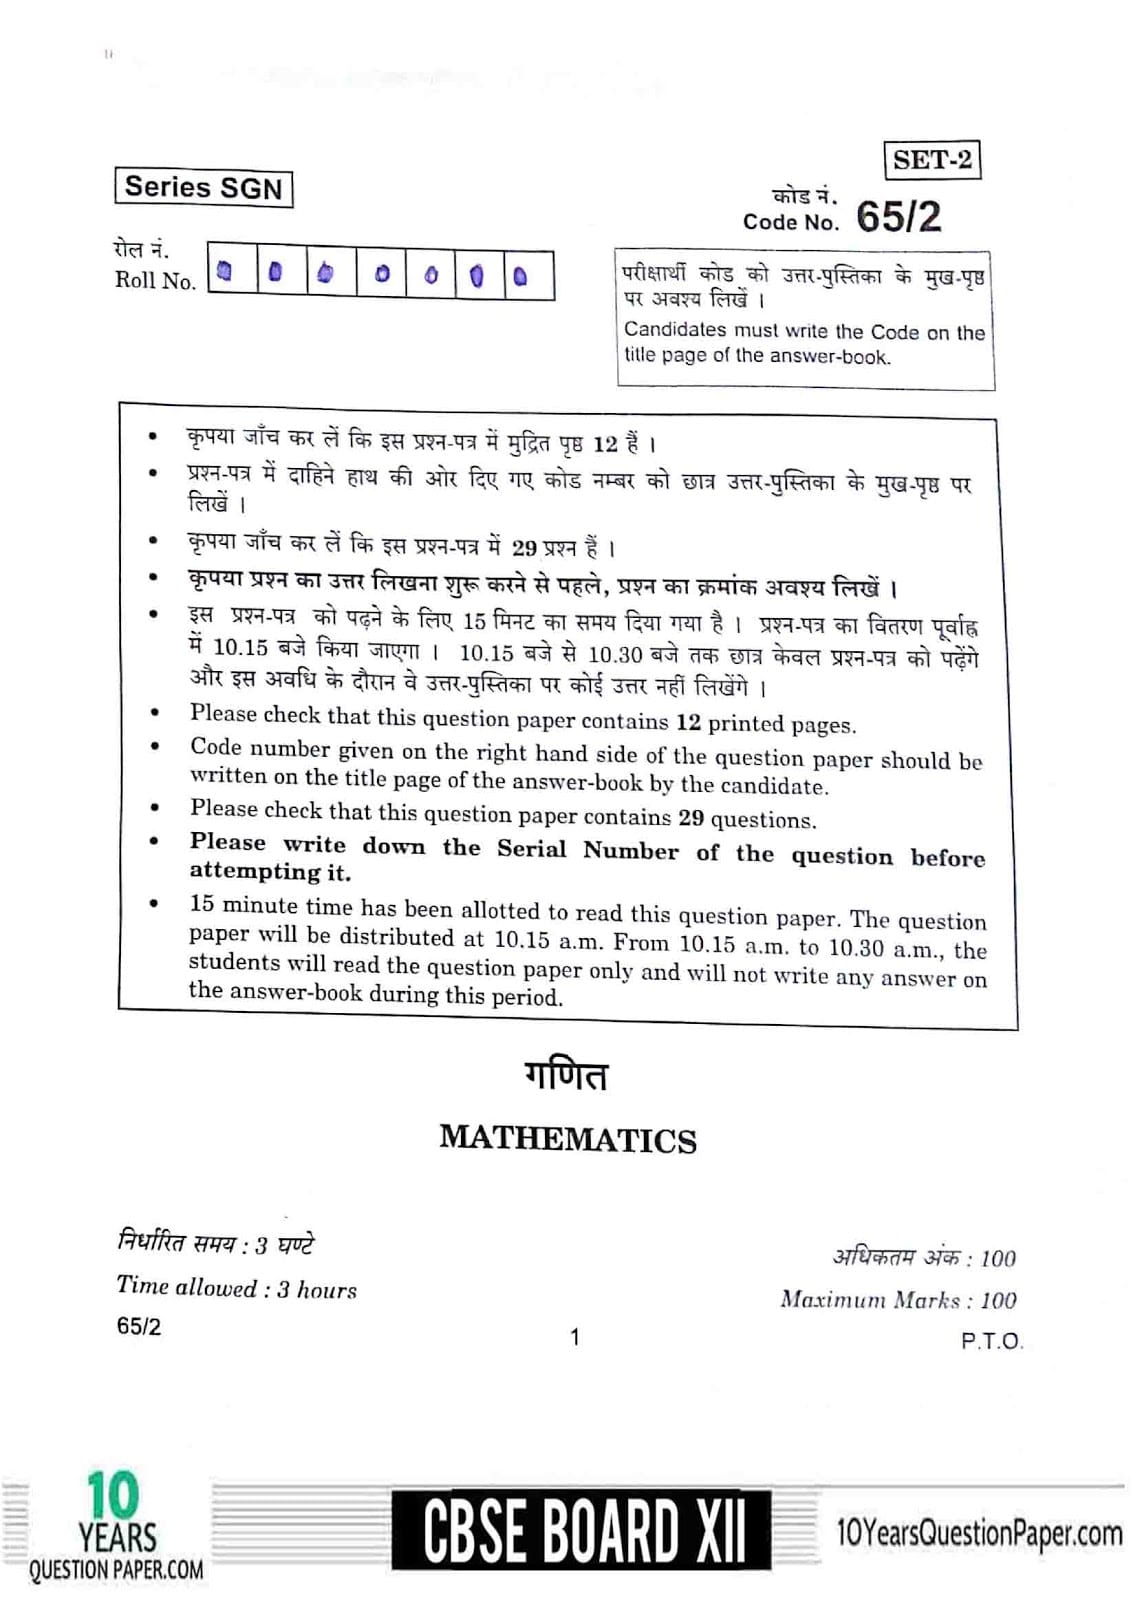 CBSE Class 12 Mathematics 2018 Question Paper